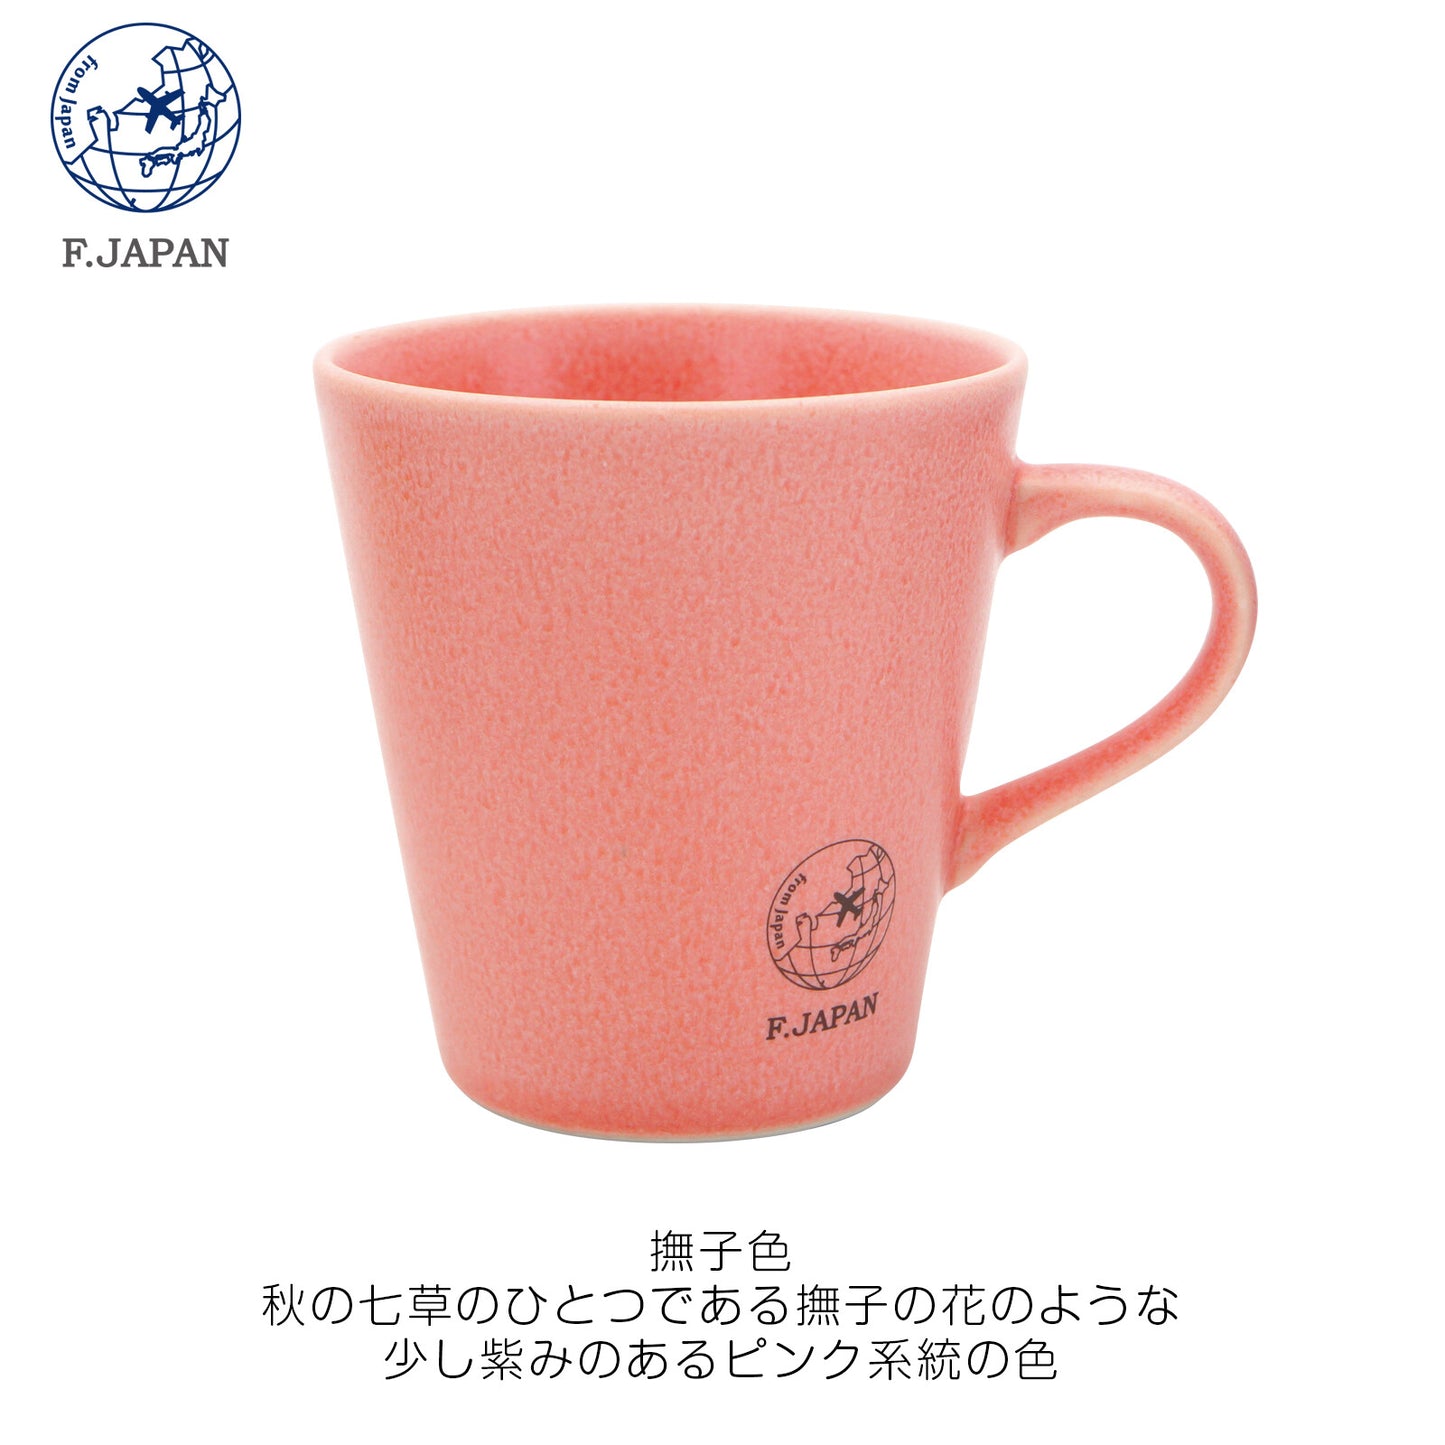 F.JAPAN Mino Ware and Color Mug